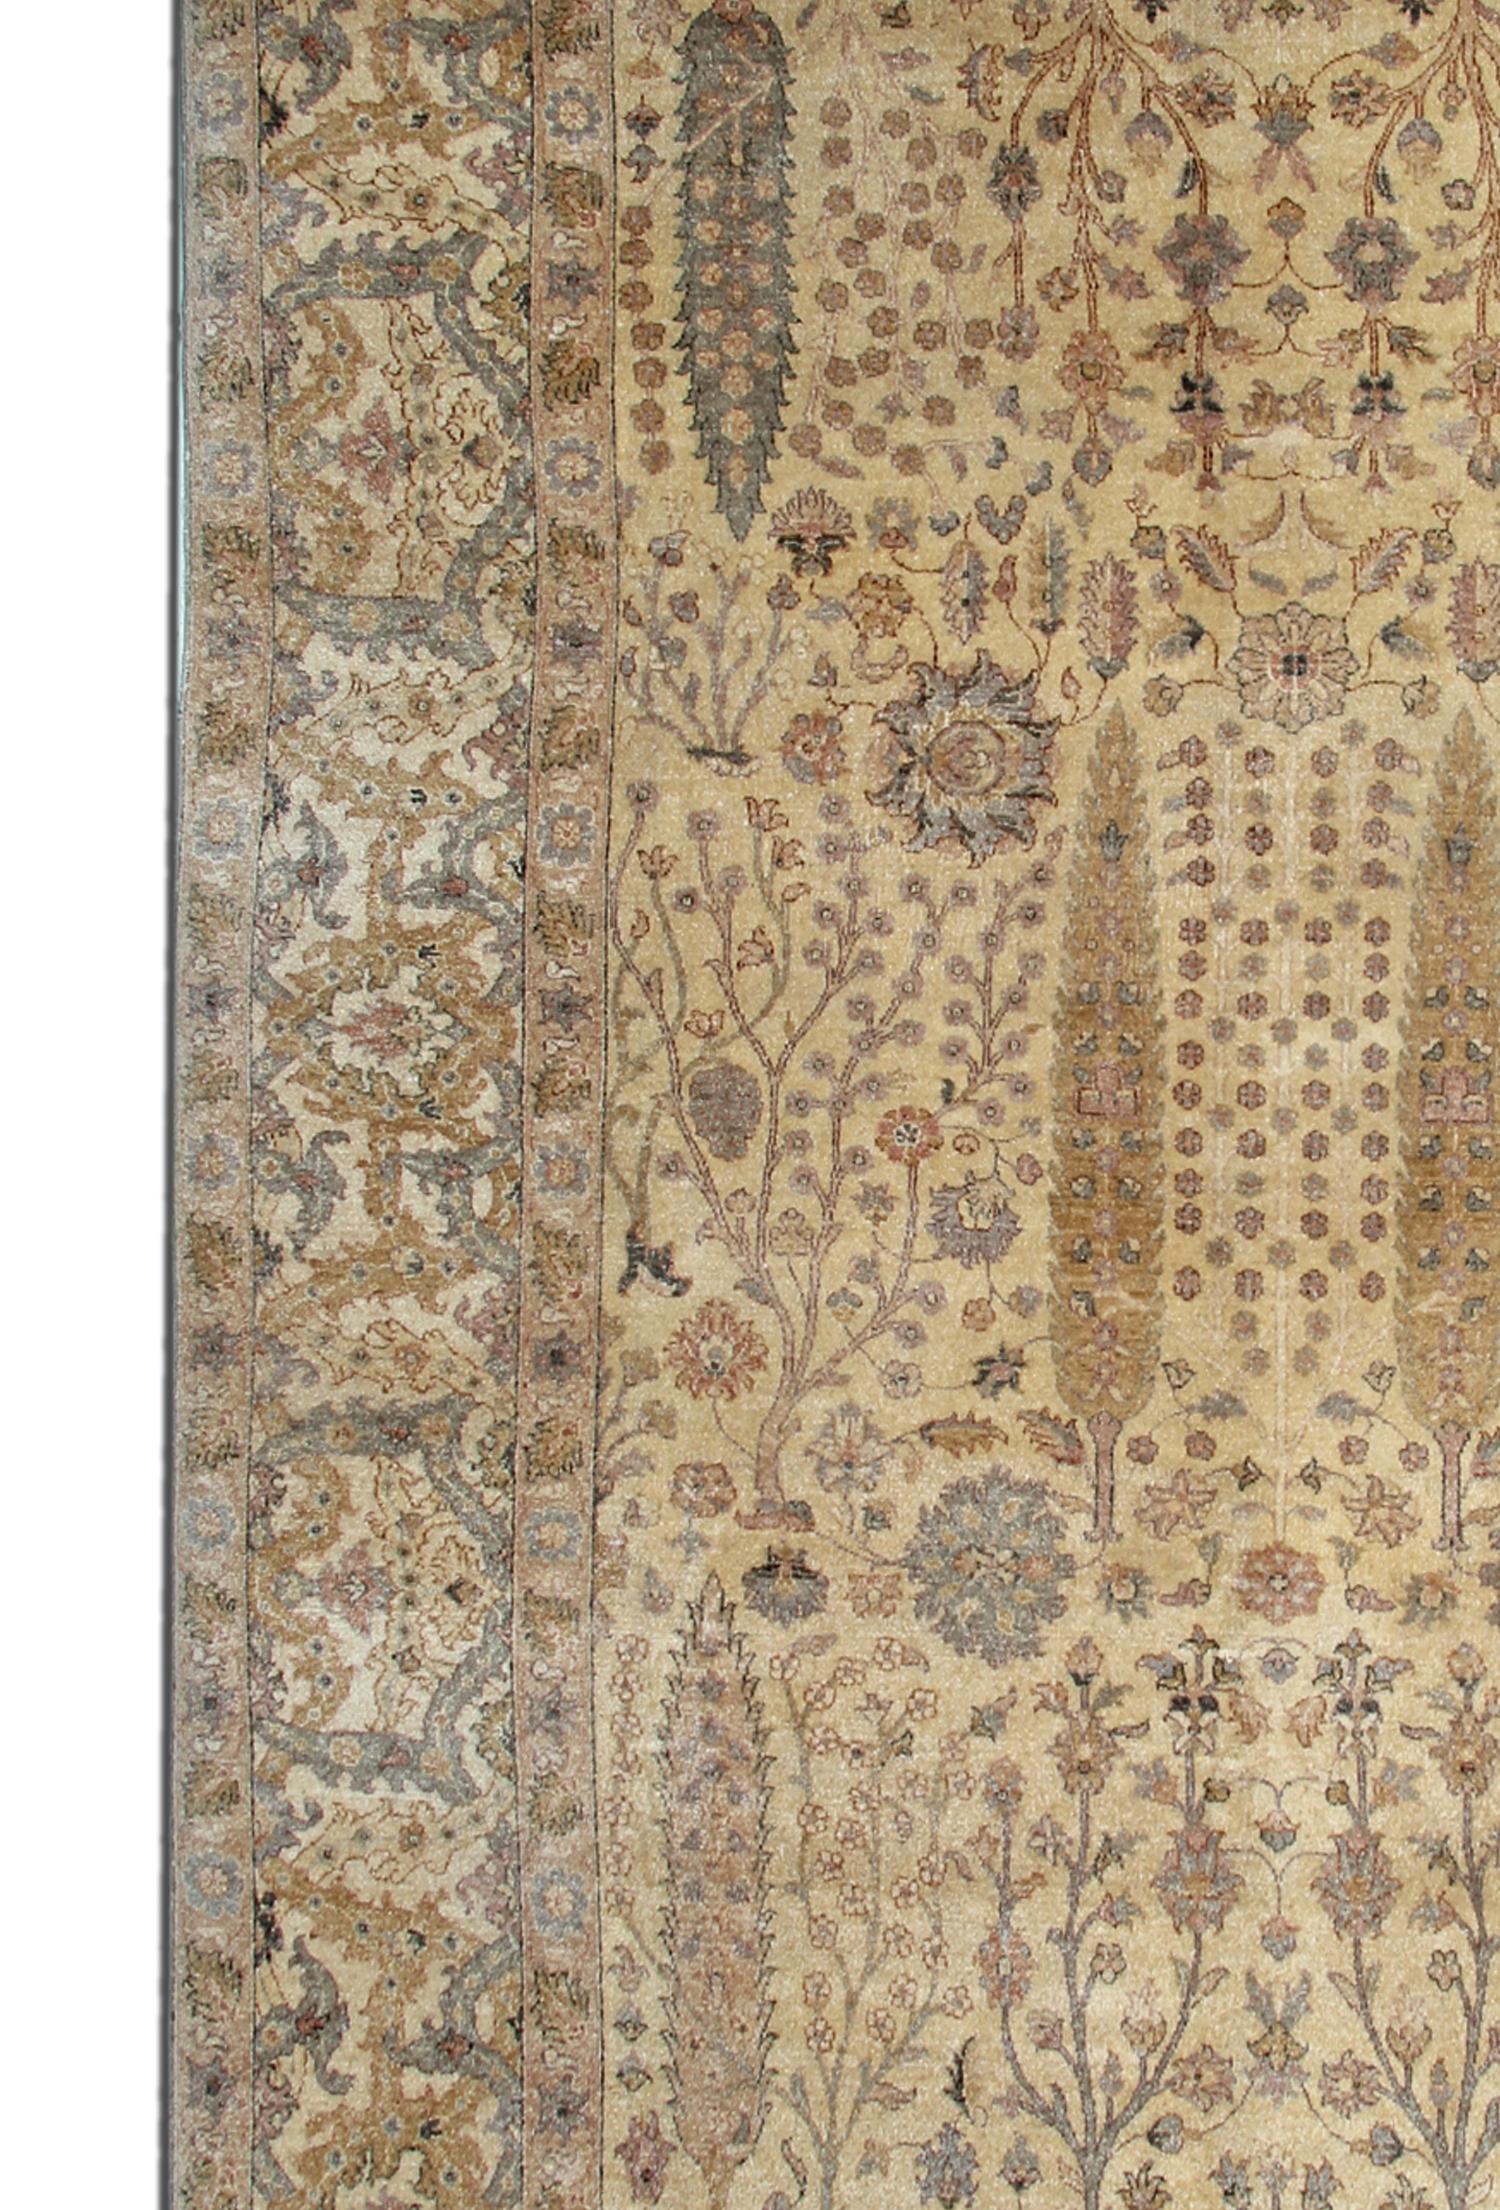 Dieser Teppich ist ein Sultanabad-Teppich im Ziegler-Stil, der auf unseren Webstühlen von unseren Webermeistern in Afghanistan hergestellt wurde. Es ist handgefertigt mit natürlichen pflanzlichen Farbstoffen und handgesponnener Wolle. Das groß